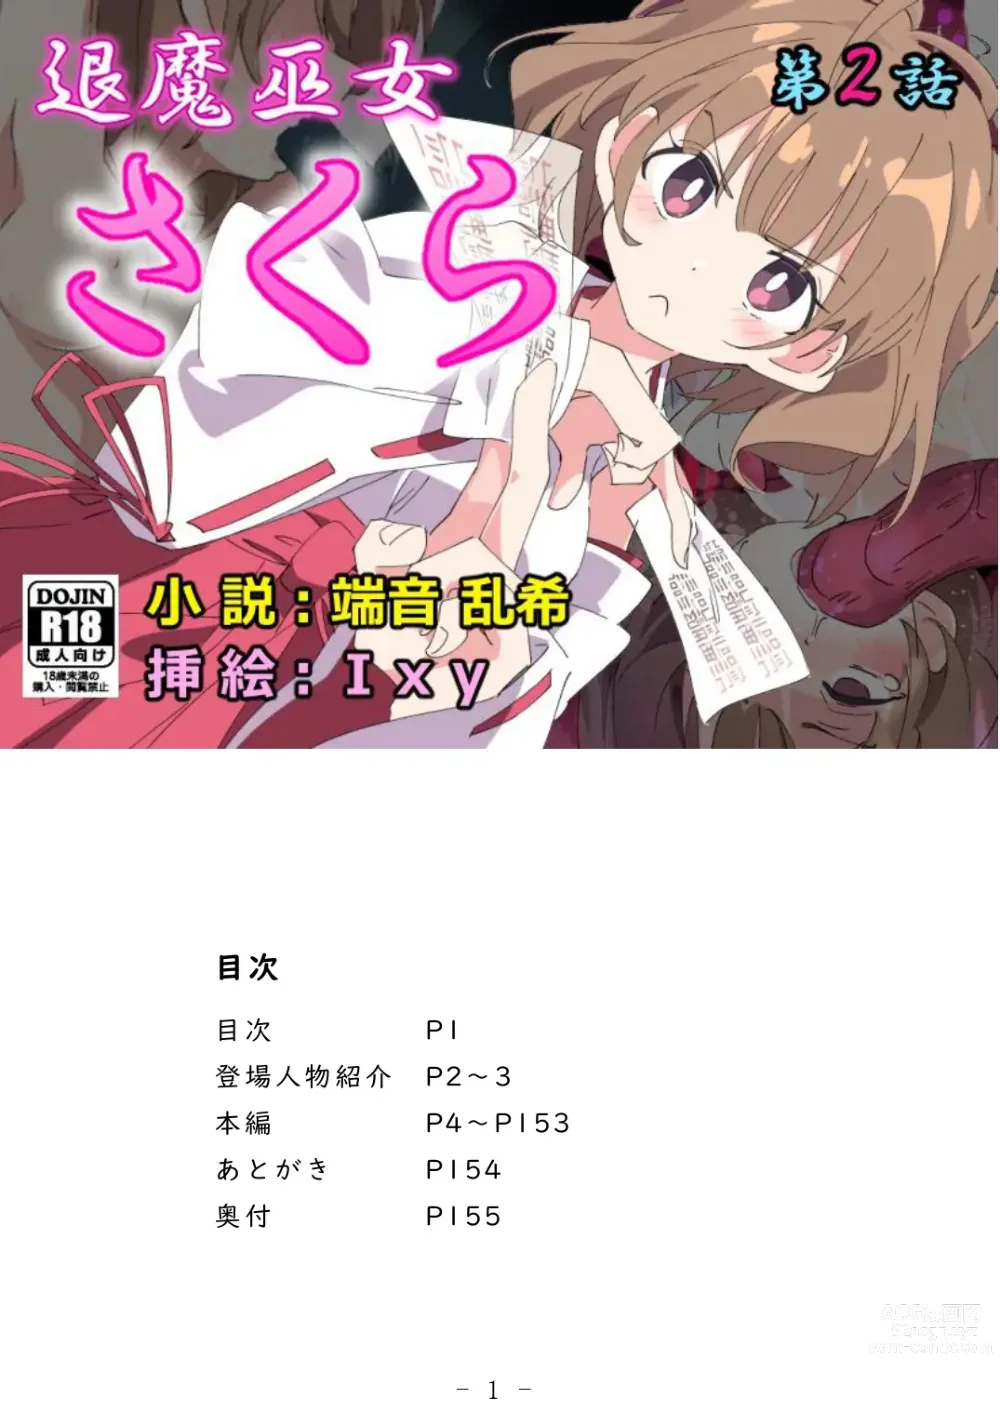 Page 2 of doujinshi Taima Miko Sakura 2 -Kegasaresgu Taima Miko wa Shokushu Naedoko ni Ochiru-